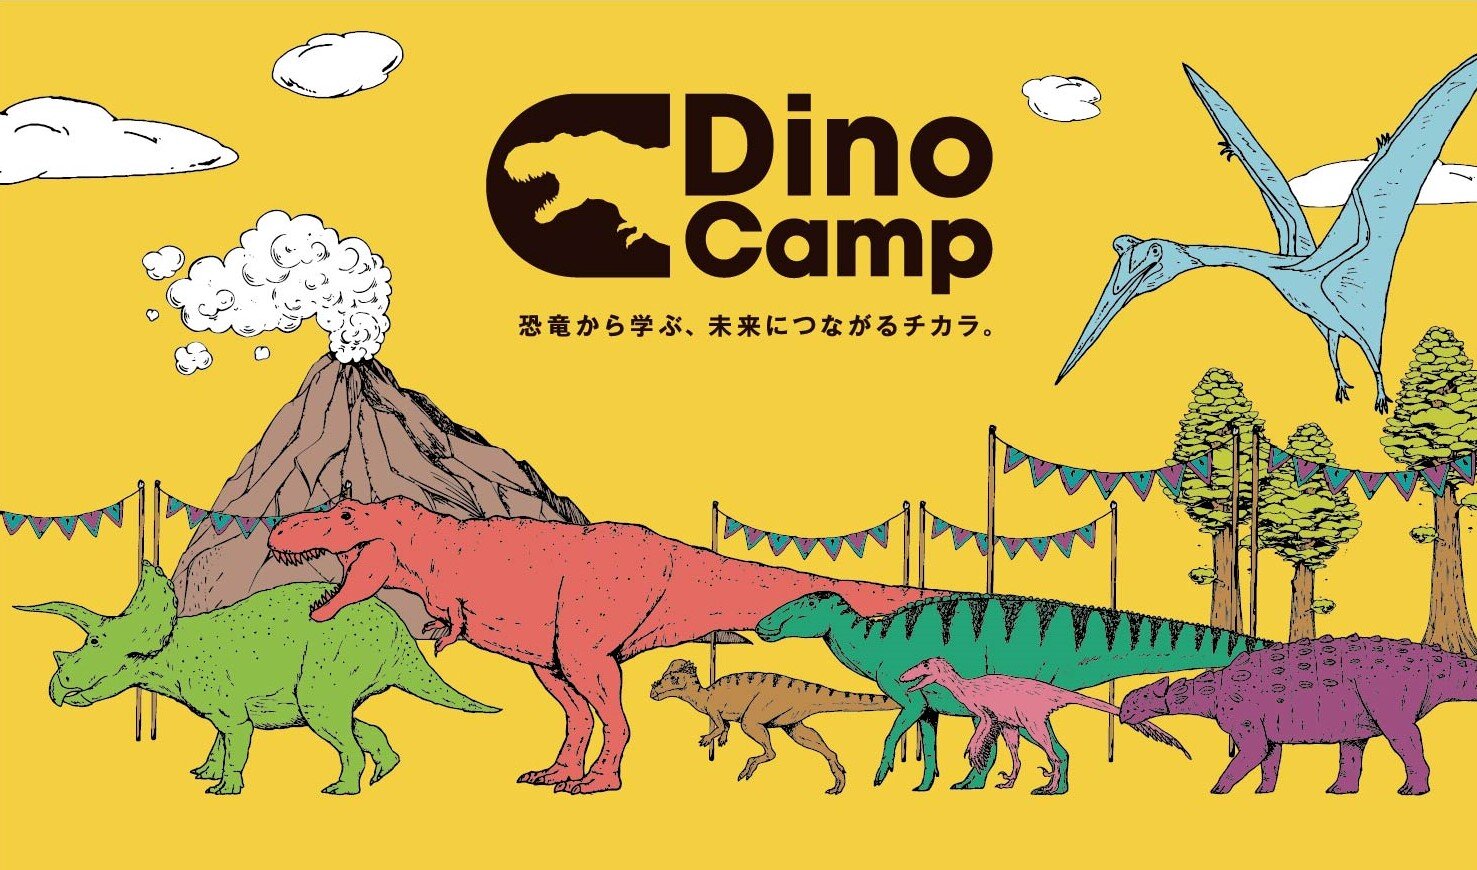 『Dino Camp』が「TOKYO キッズフェスタ ありあけ恐竜ガーデン」に出展